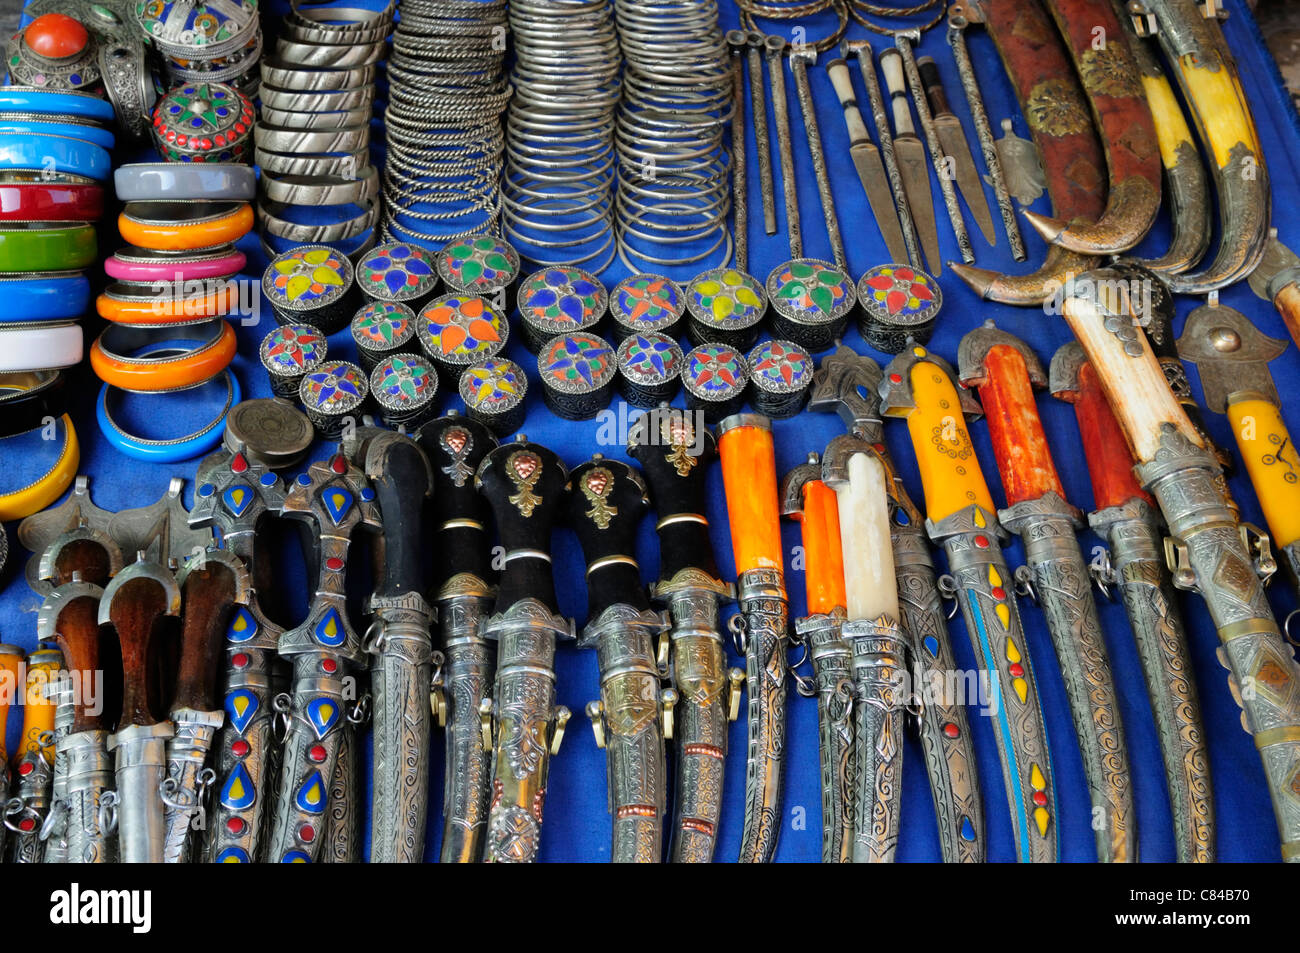 Cuchillos y joyas, Marrakech, Marruecos Foto de stock